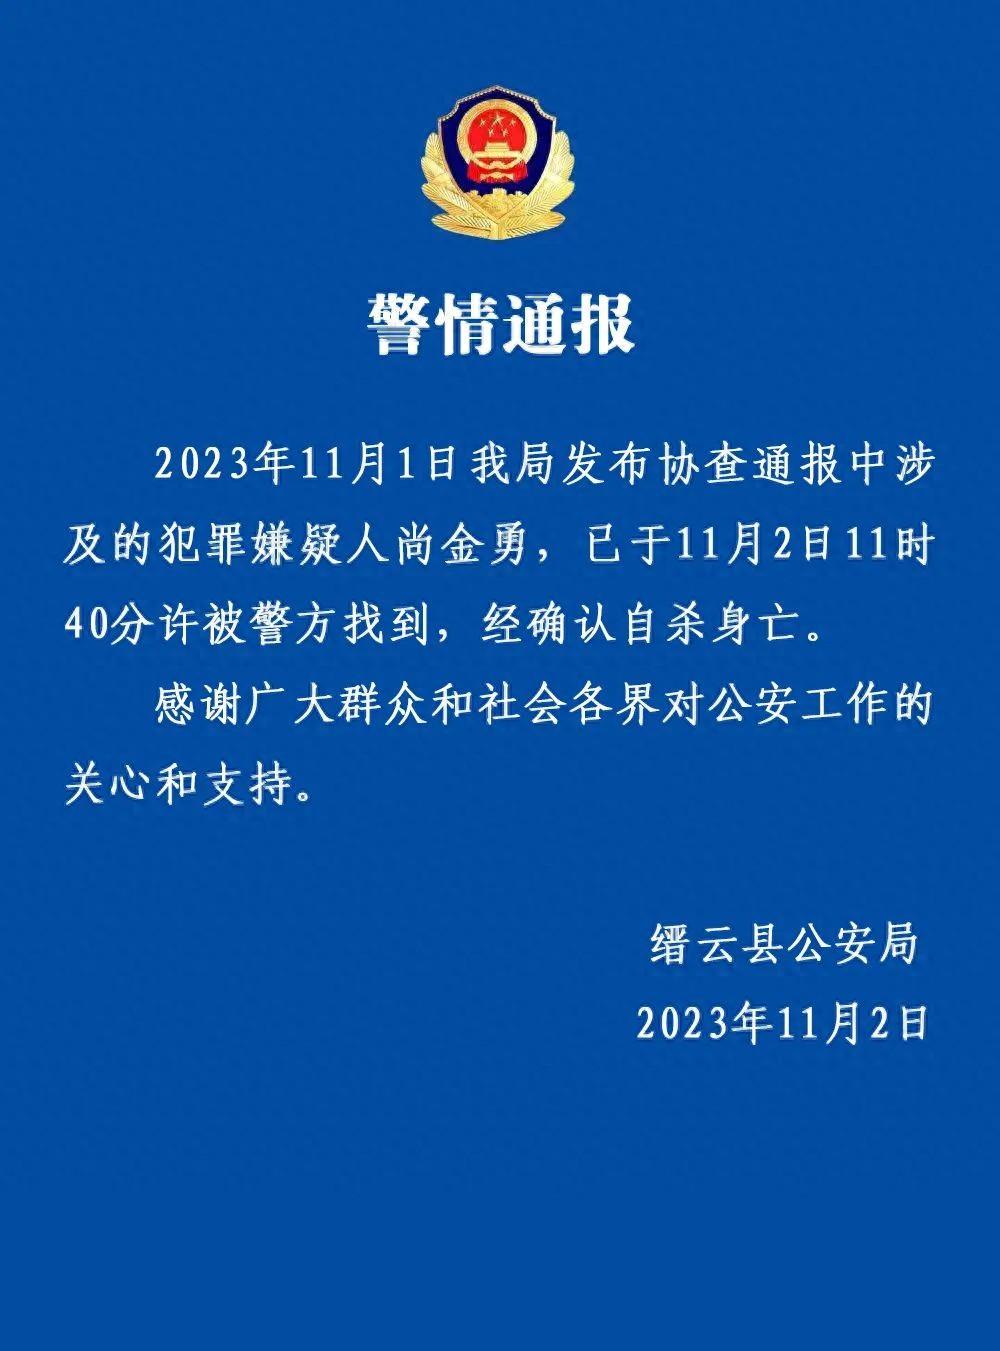 浙江丽水缙云县发生一起重大刑案，警方通报：犯罪嫌疑人自杀身亡